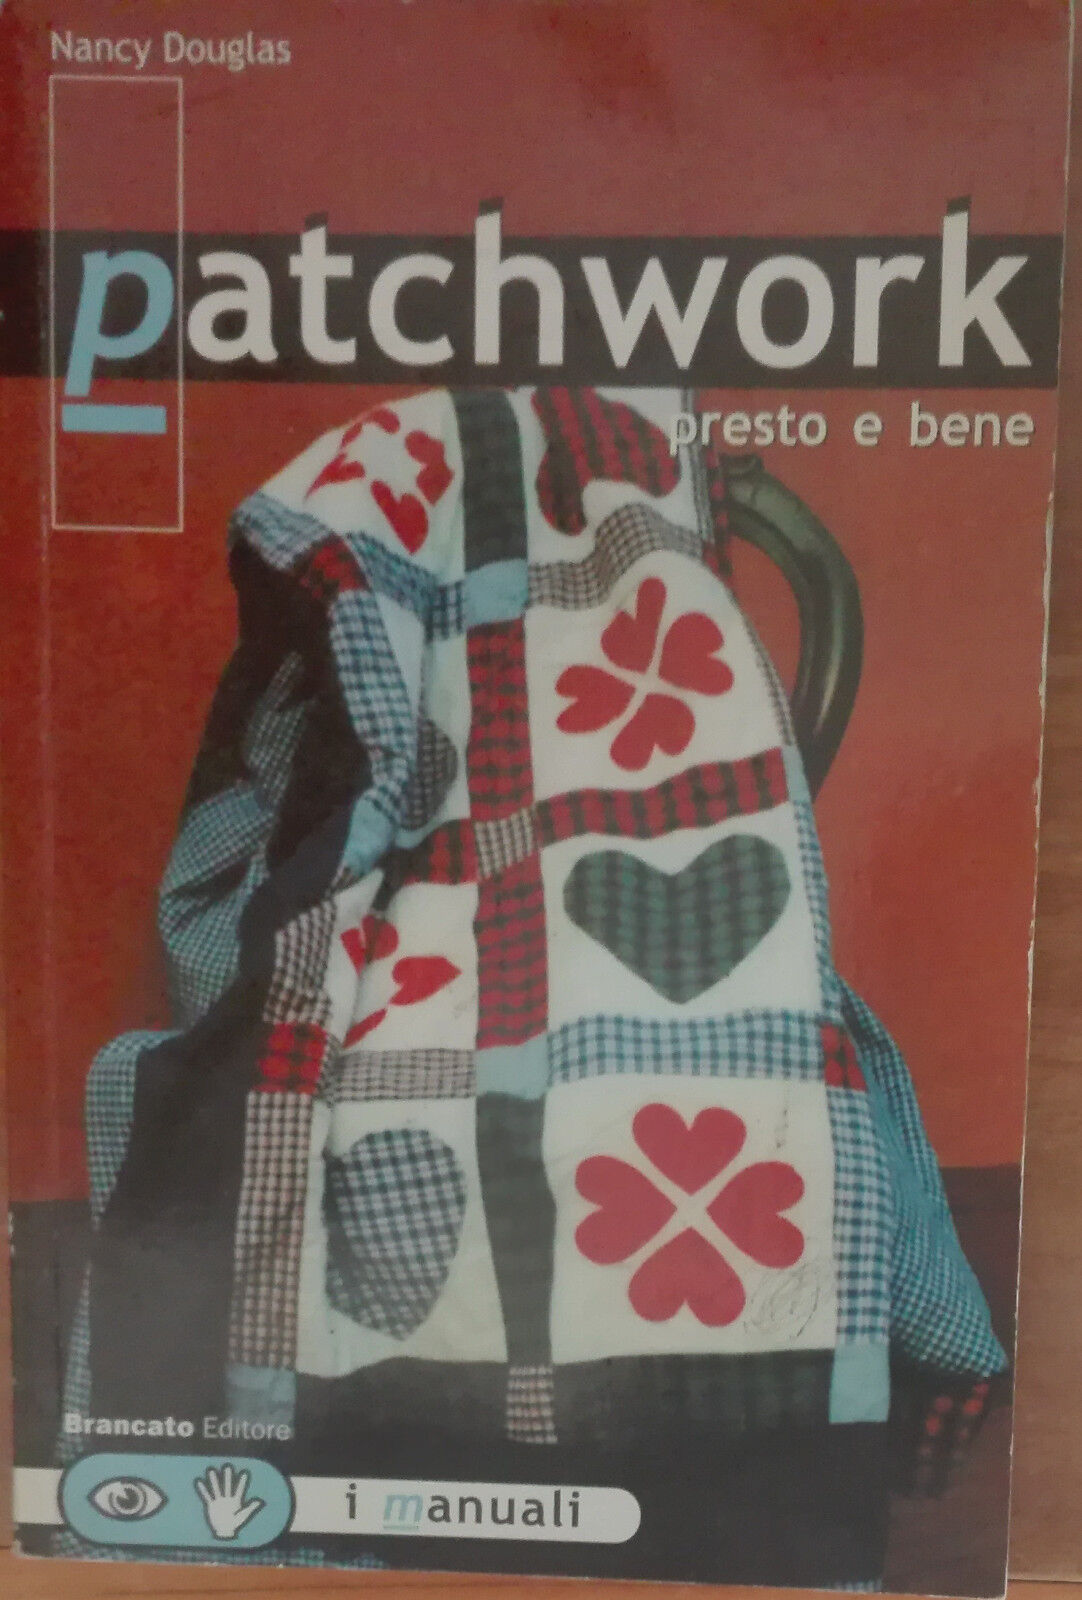 Patchwork presto e bene - Nancy Douglas - Brancato editore,2001 - A libro usato